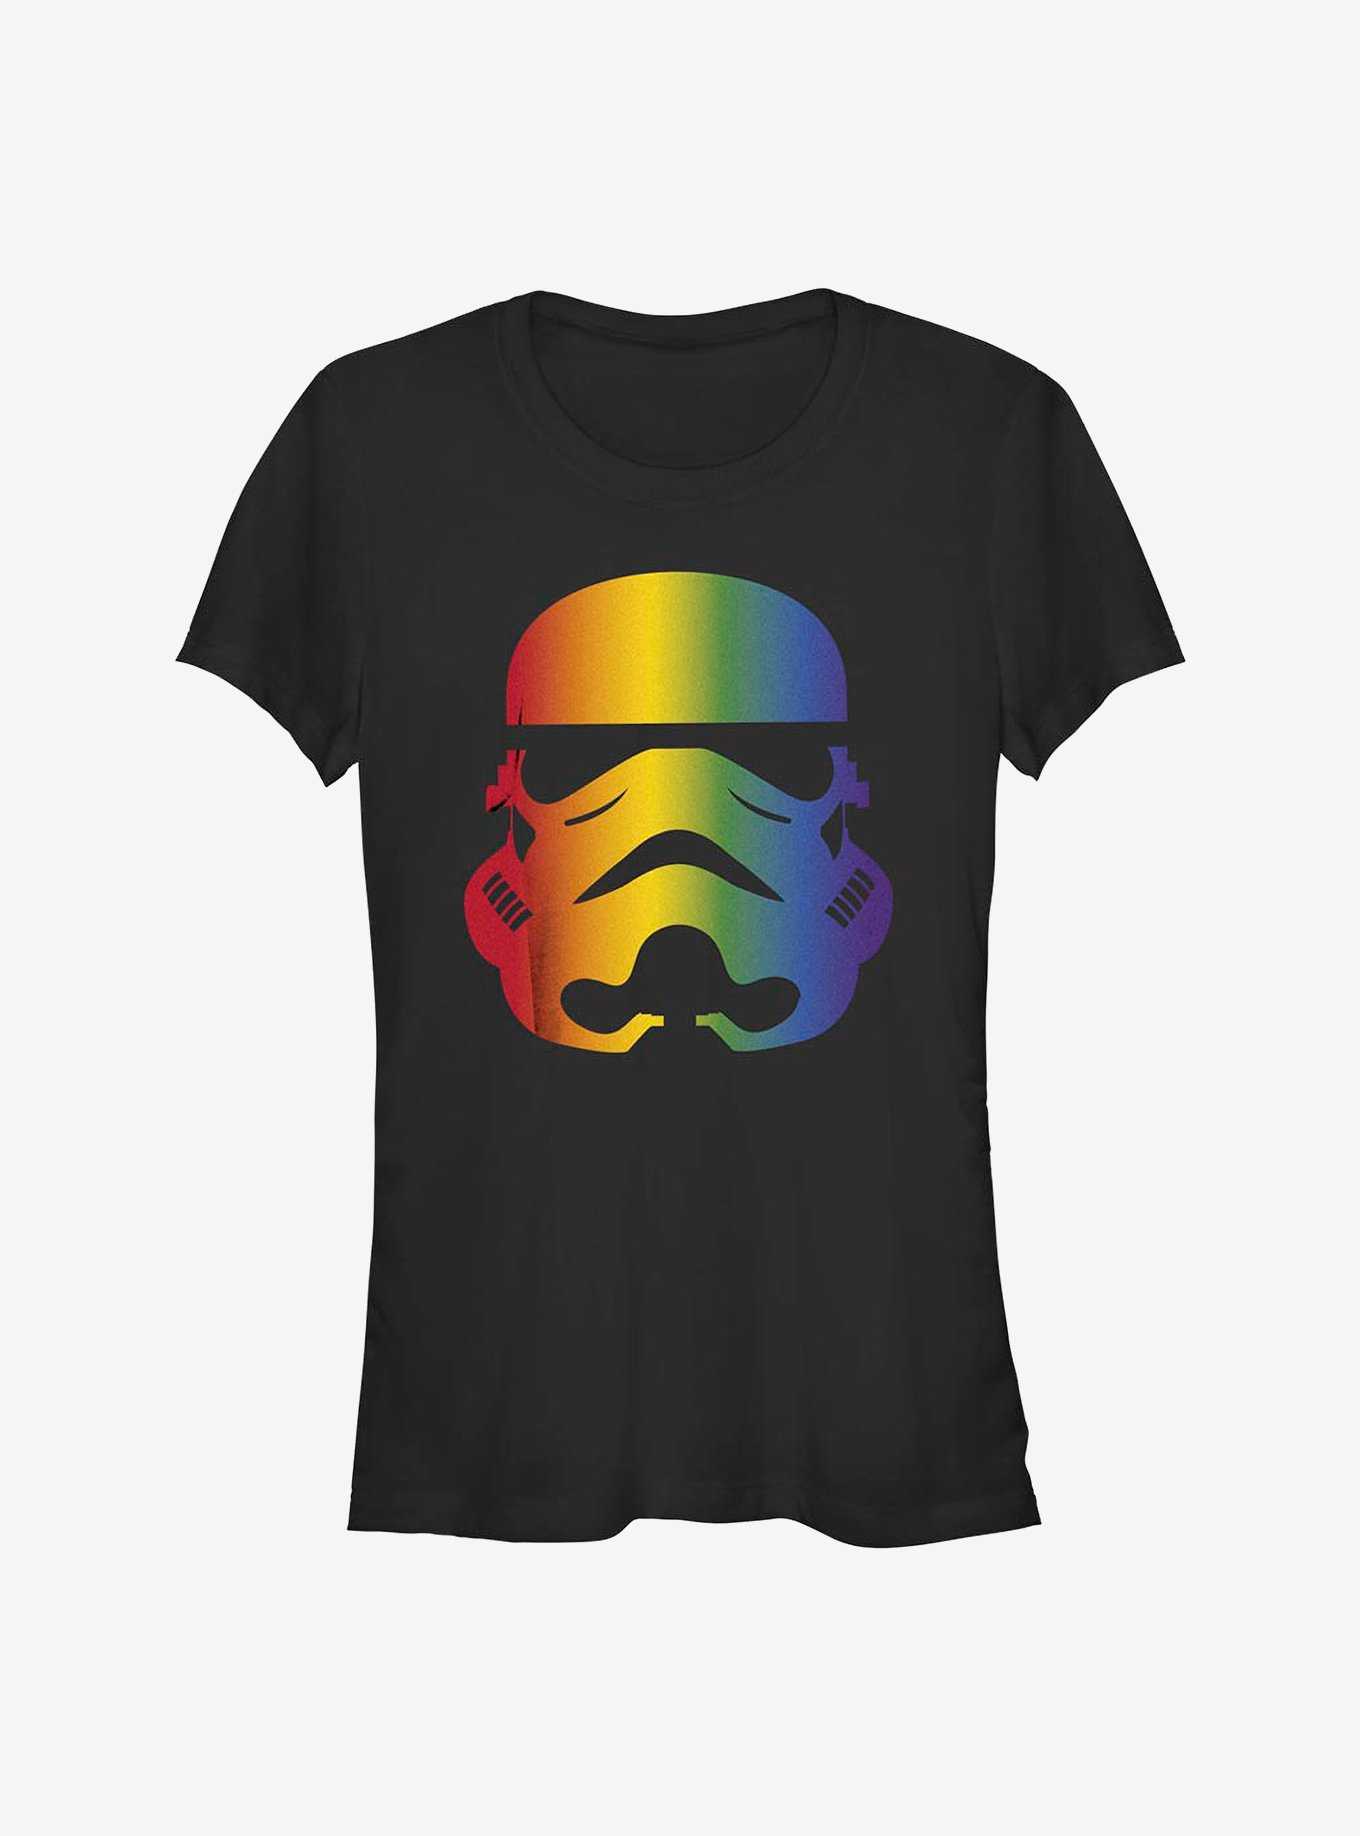 Star Wars Rainbow Stormtrooper T-Shirt, , hi-res